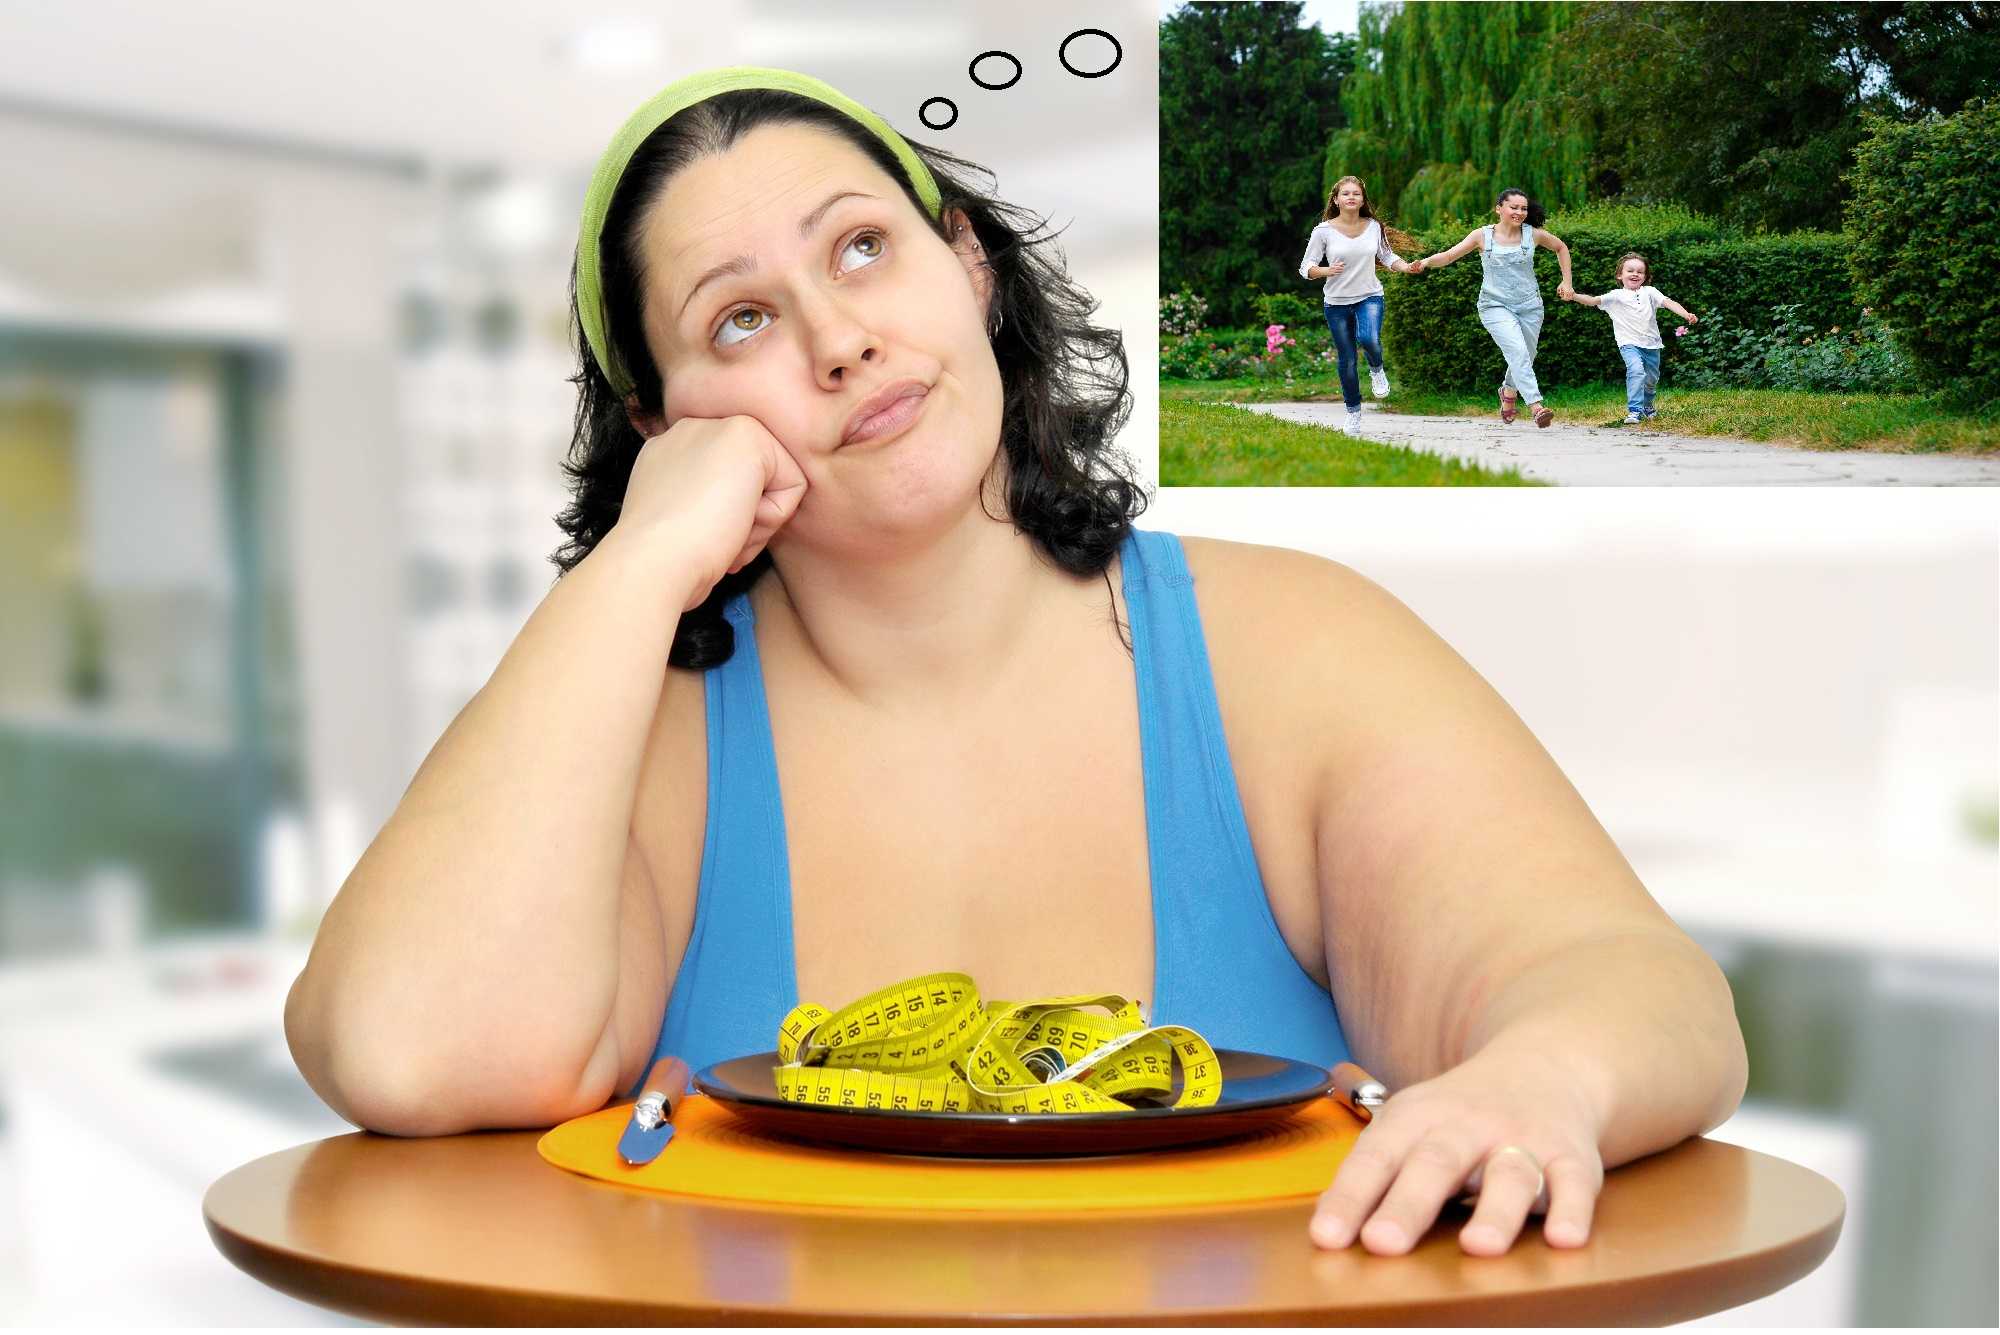 Как правильно похудеть и не поправиться Похудение без диет: повышаем самоуважение - снижаем вес Психология похудения умственная диета